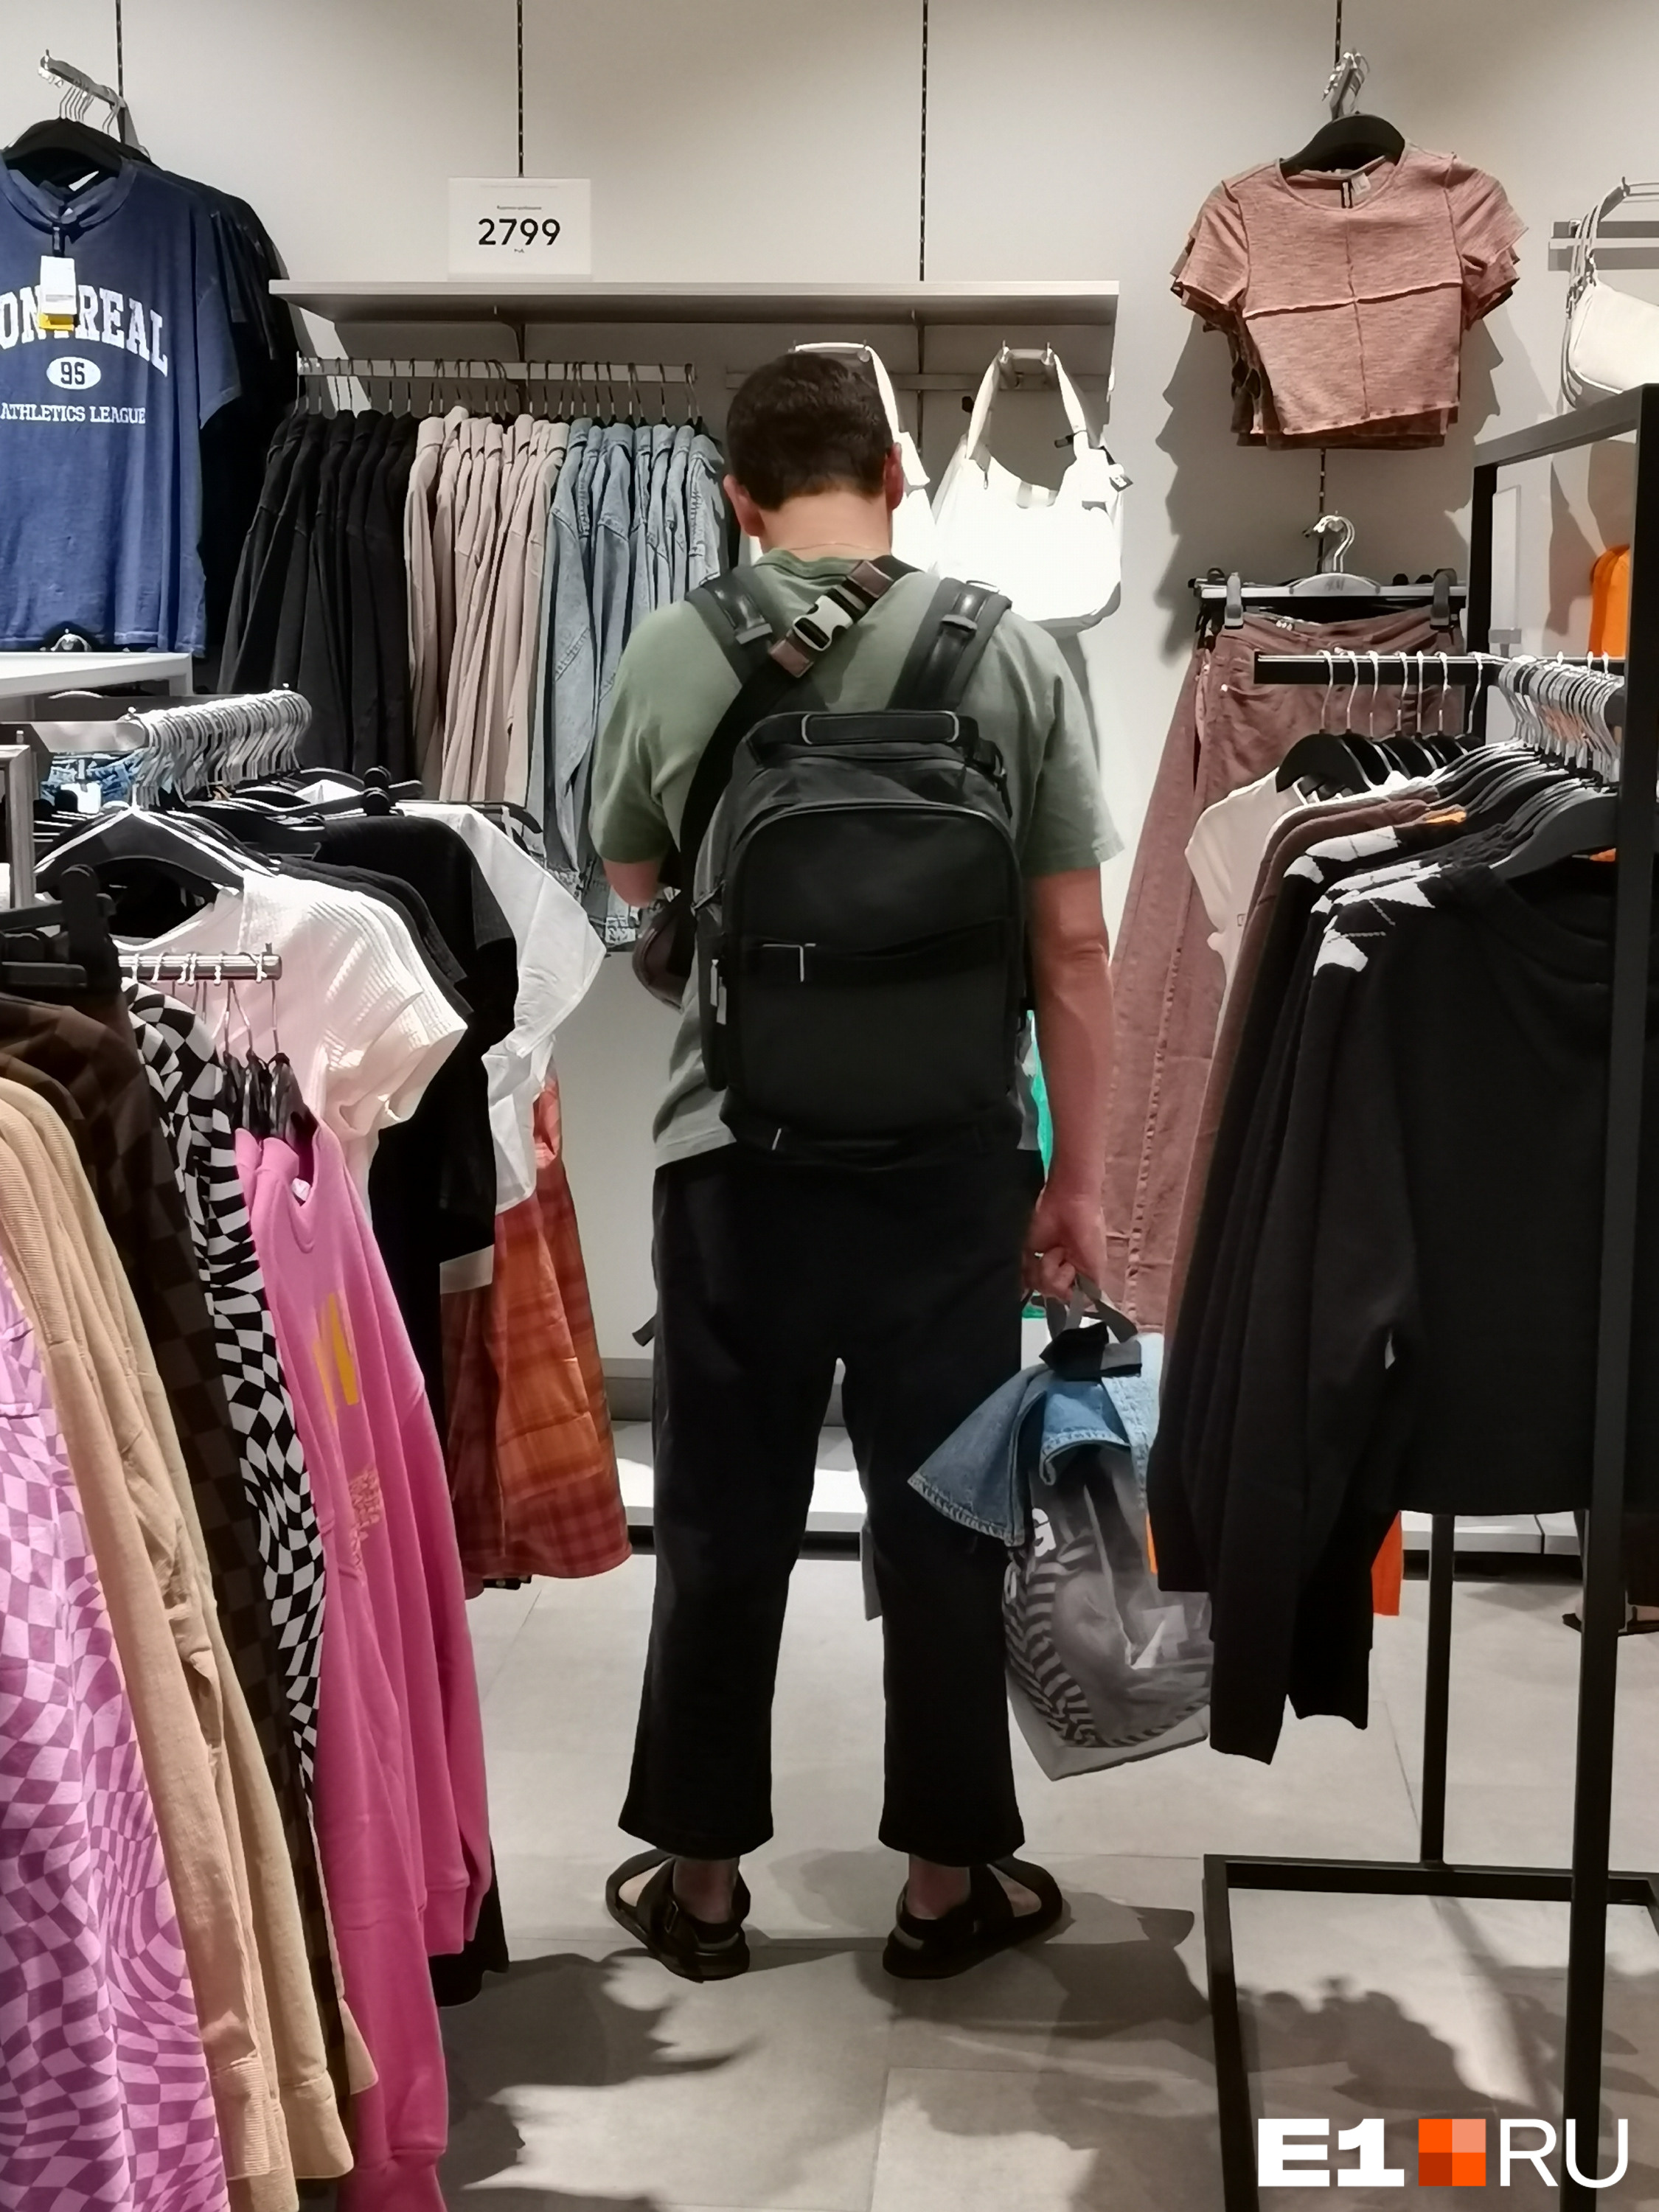 Некоторым мужчинам удалось вырваться на шопинг по случаю открытия <nobr class="_">H&M</nobr>